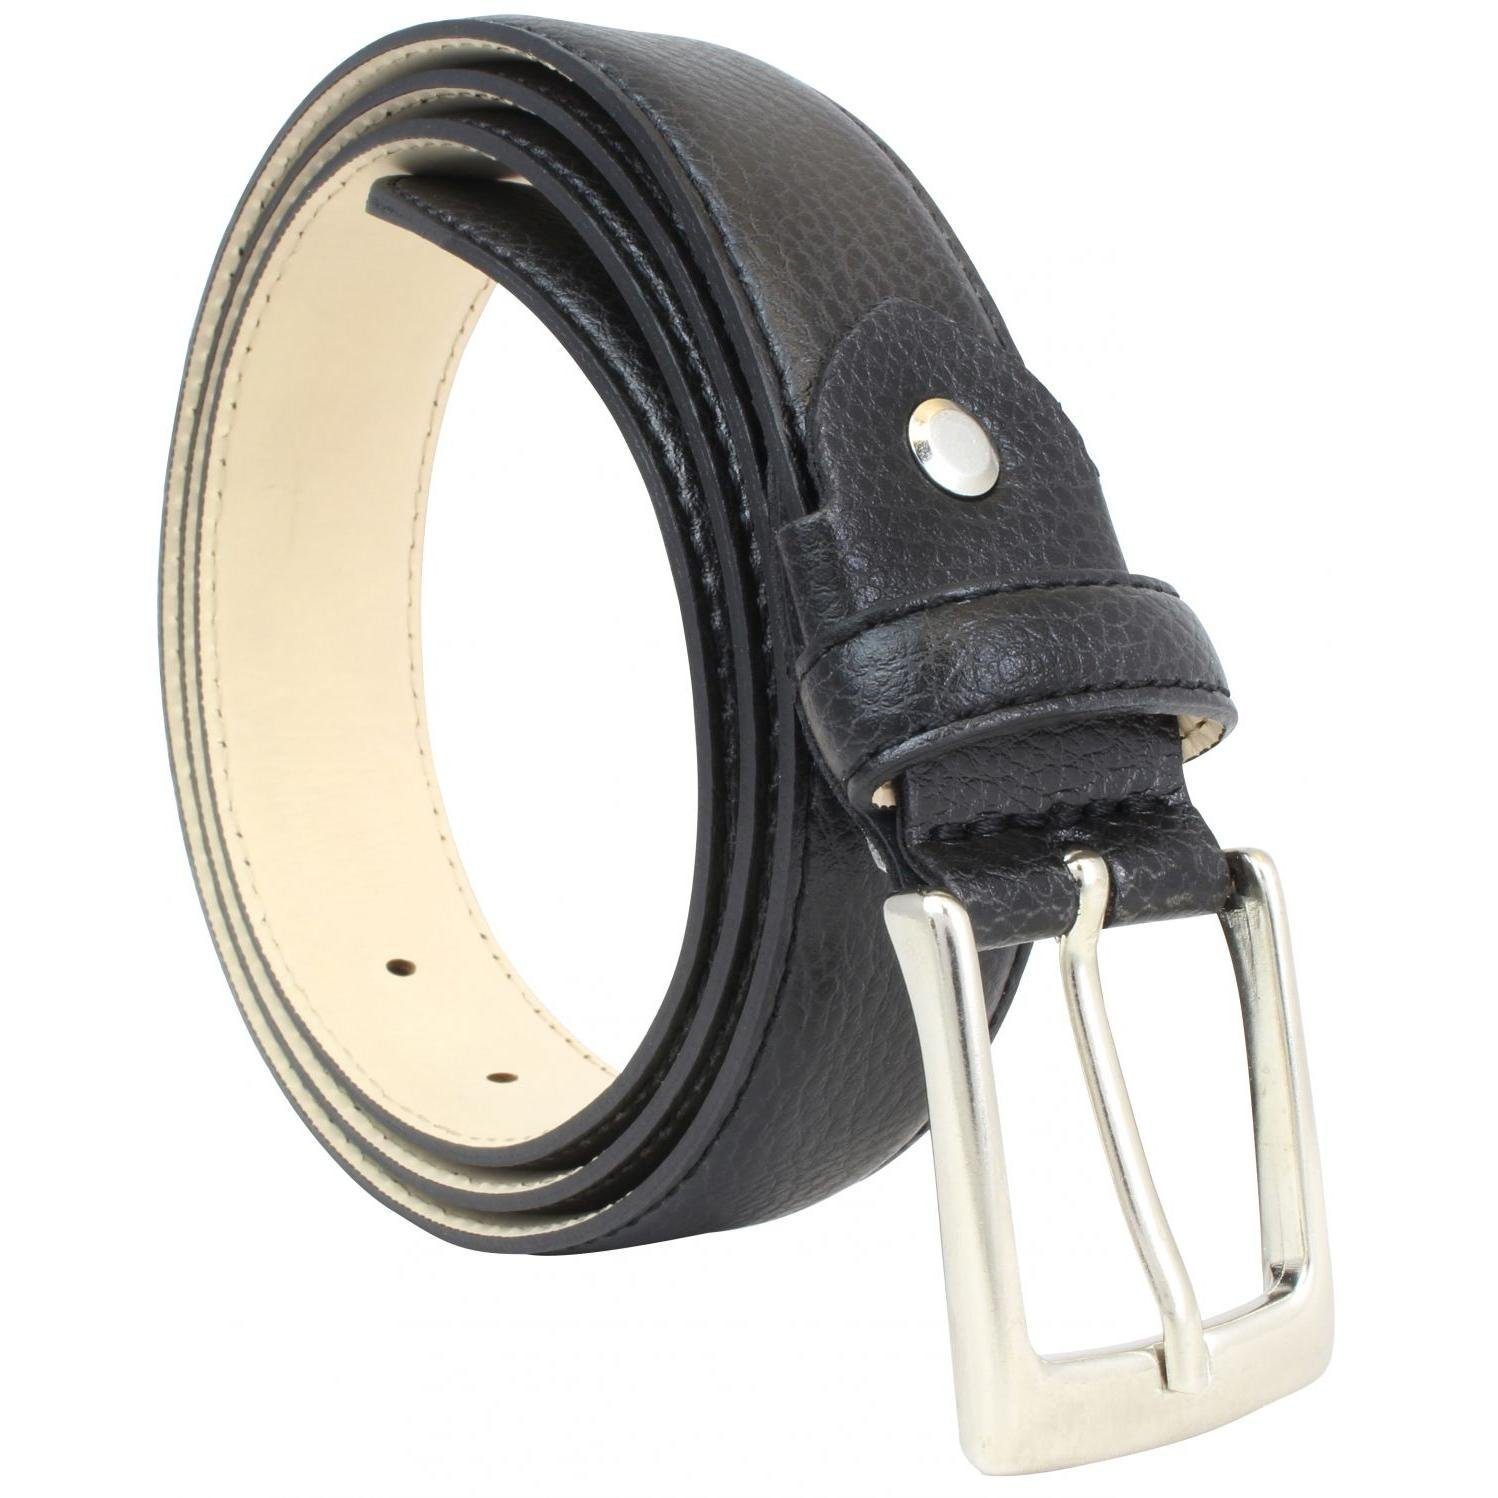 BELTINGER Ledergürtel Anzuggürtel Oberfläche 3cm Schwarz eleganter - Her Business-Gürtel 3cm für mit